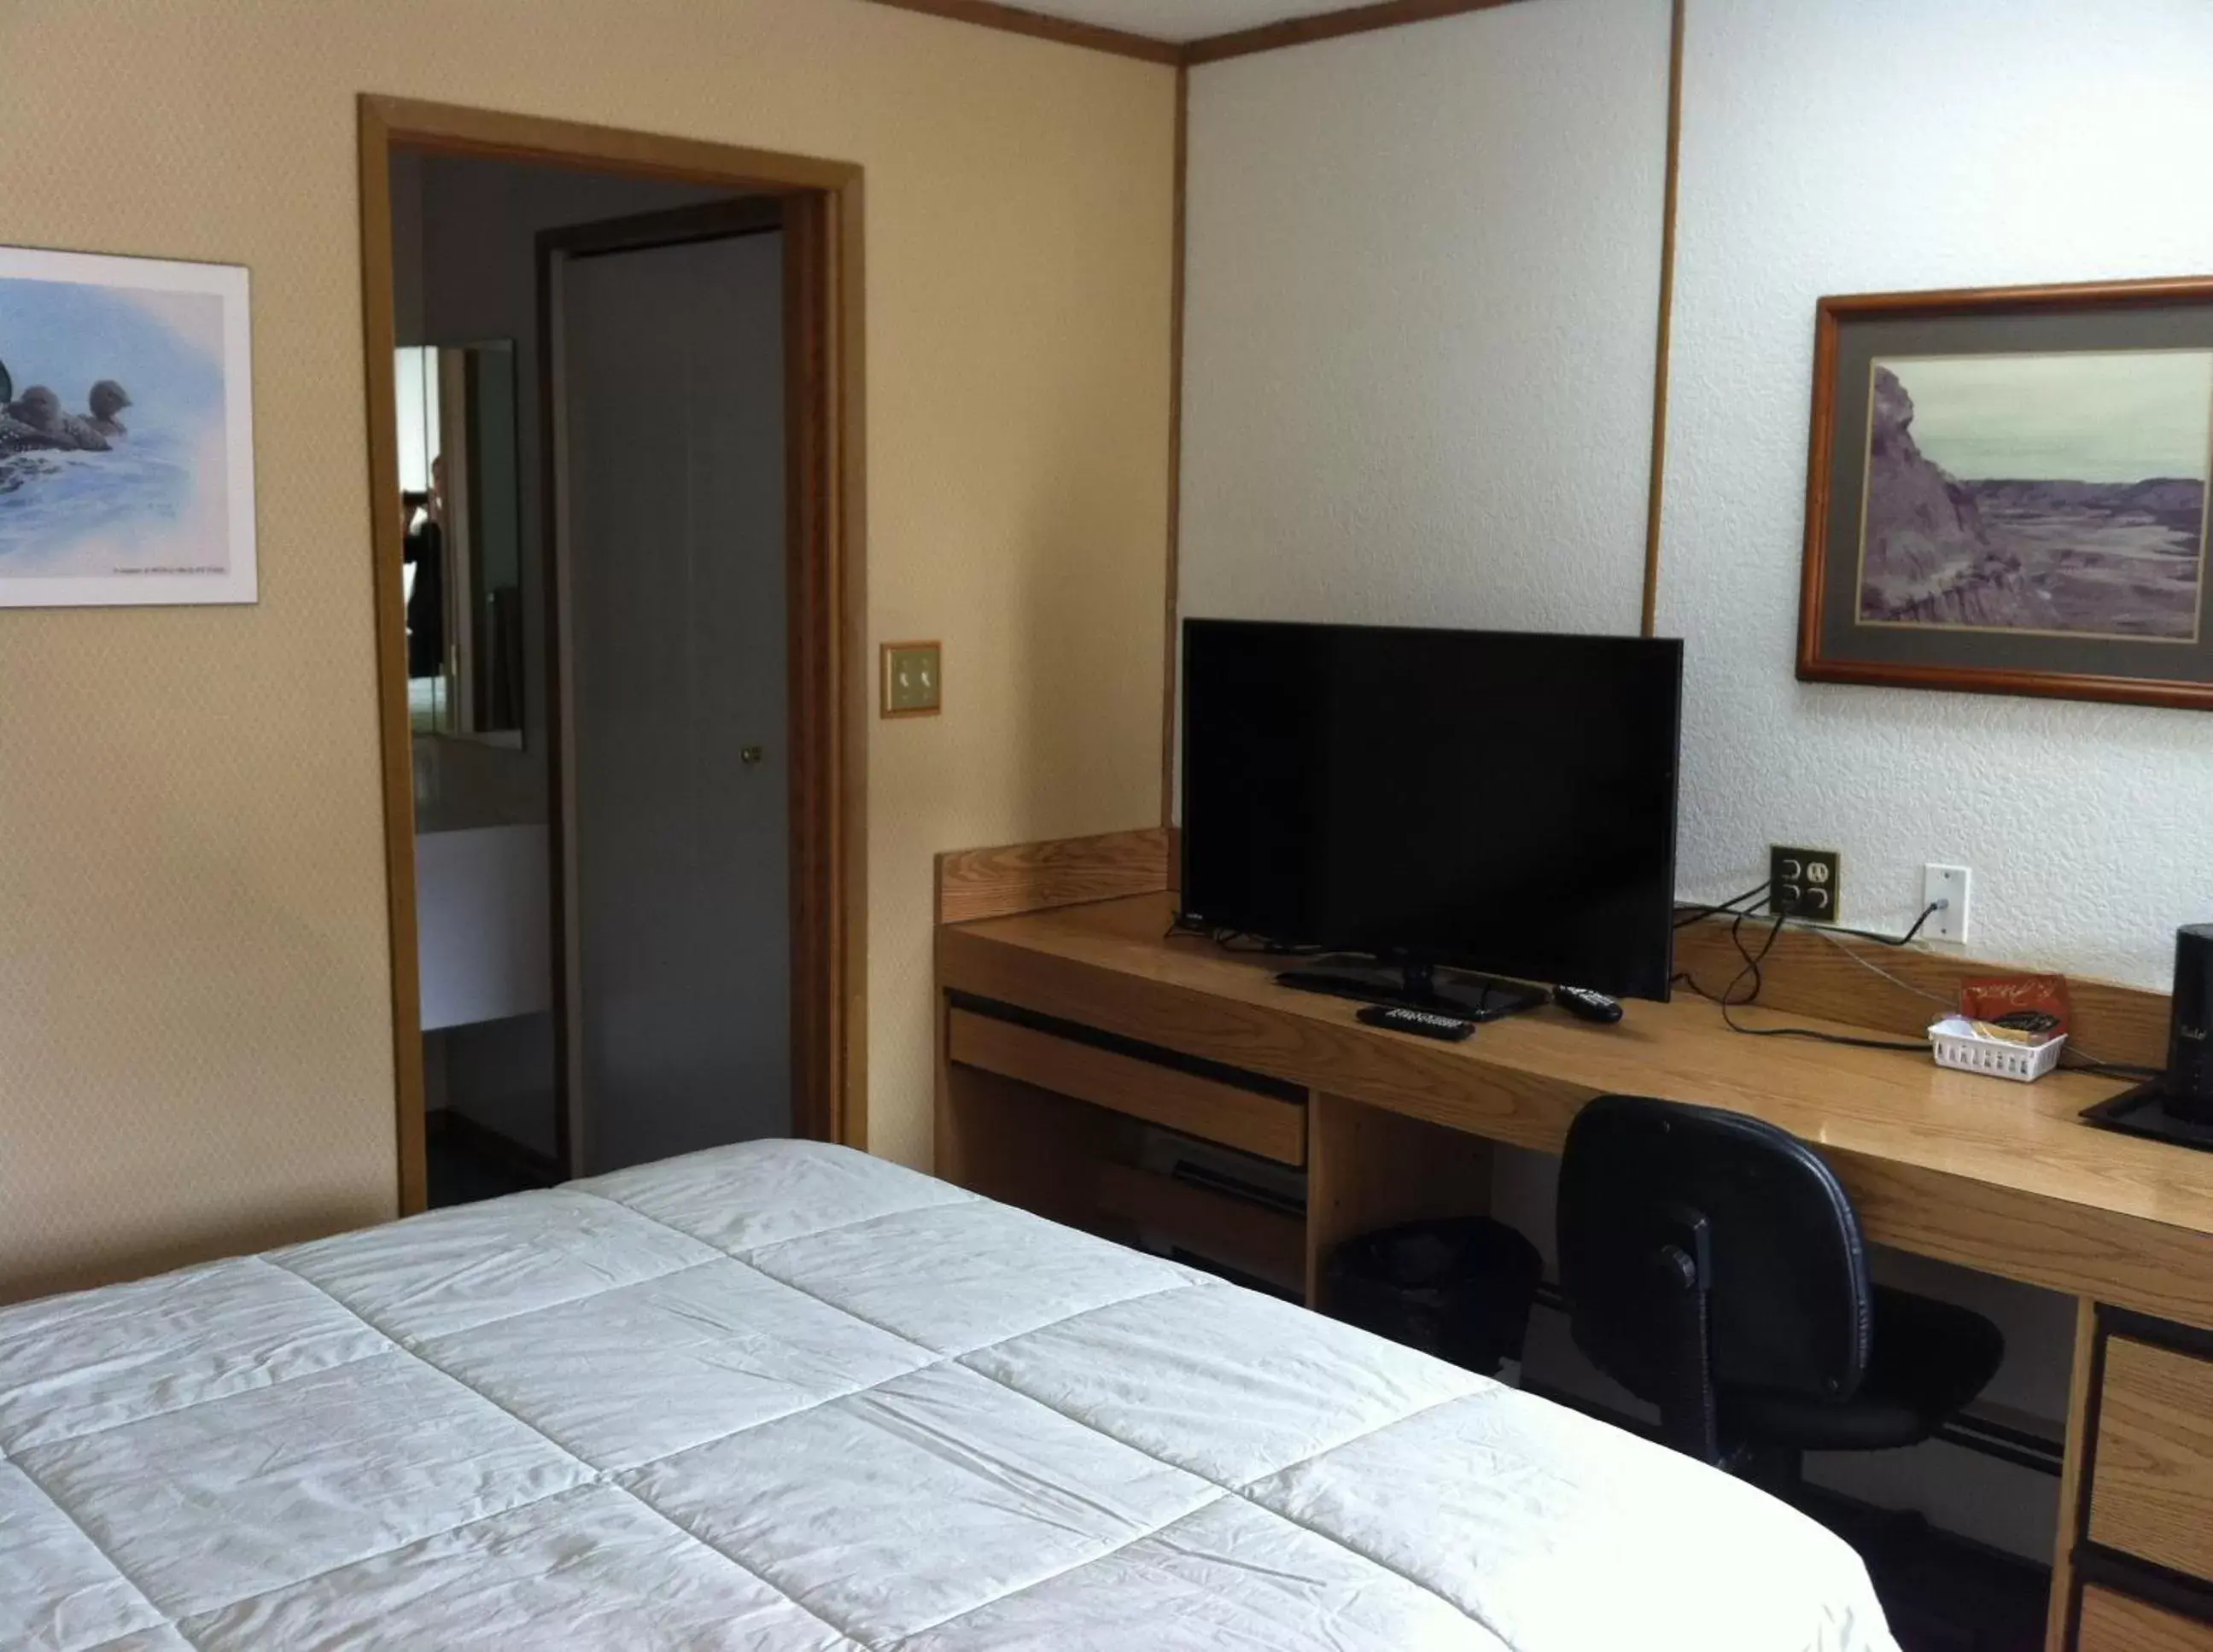 Bedroom, TV/Entertainment Center in Rest Easy Motel